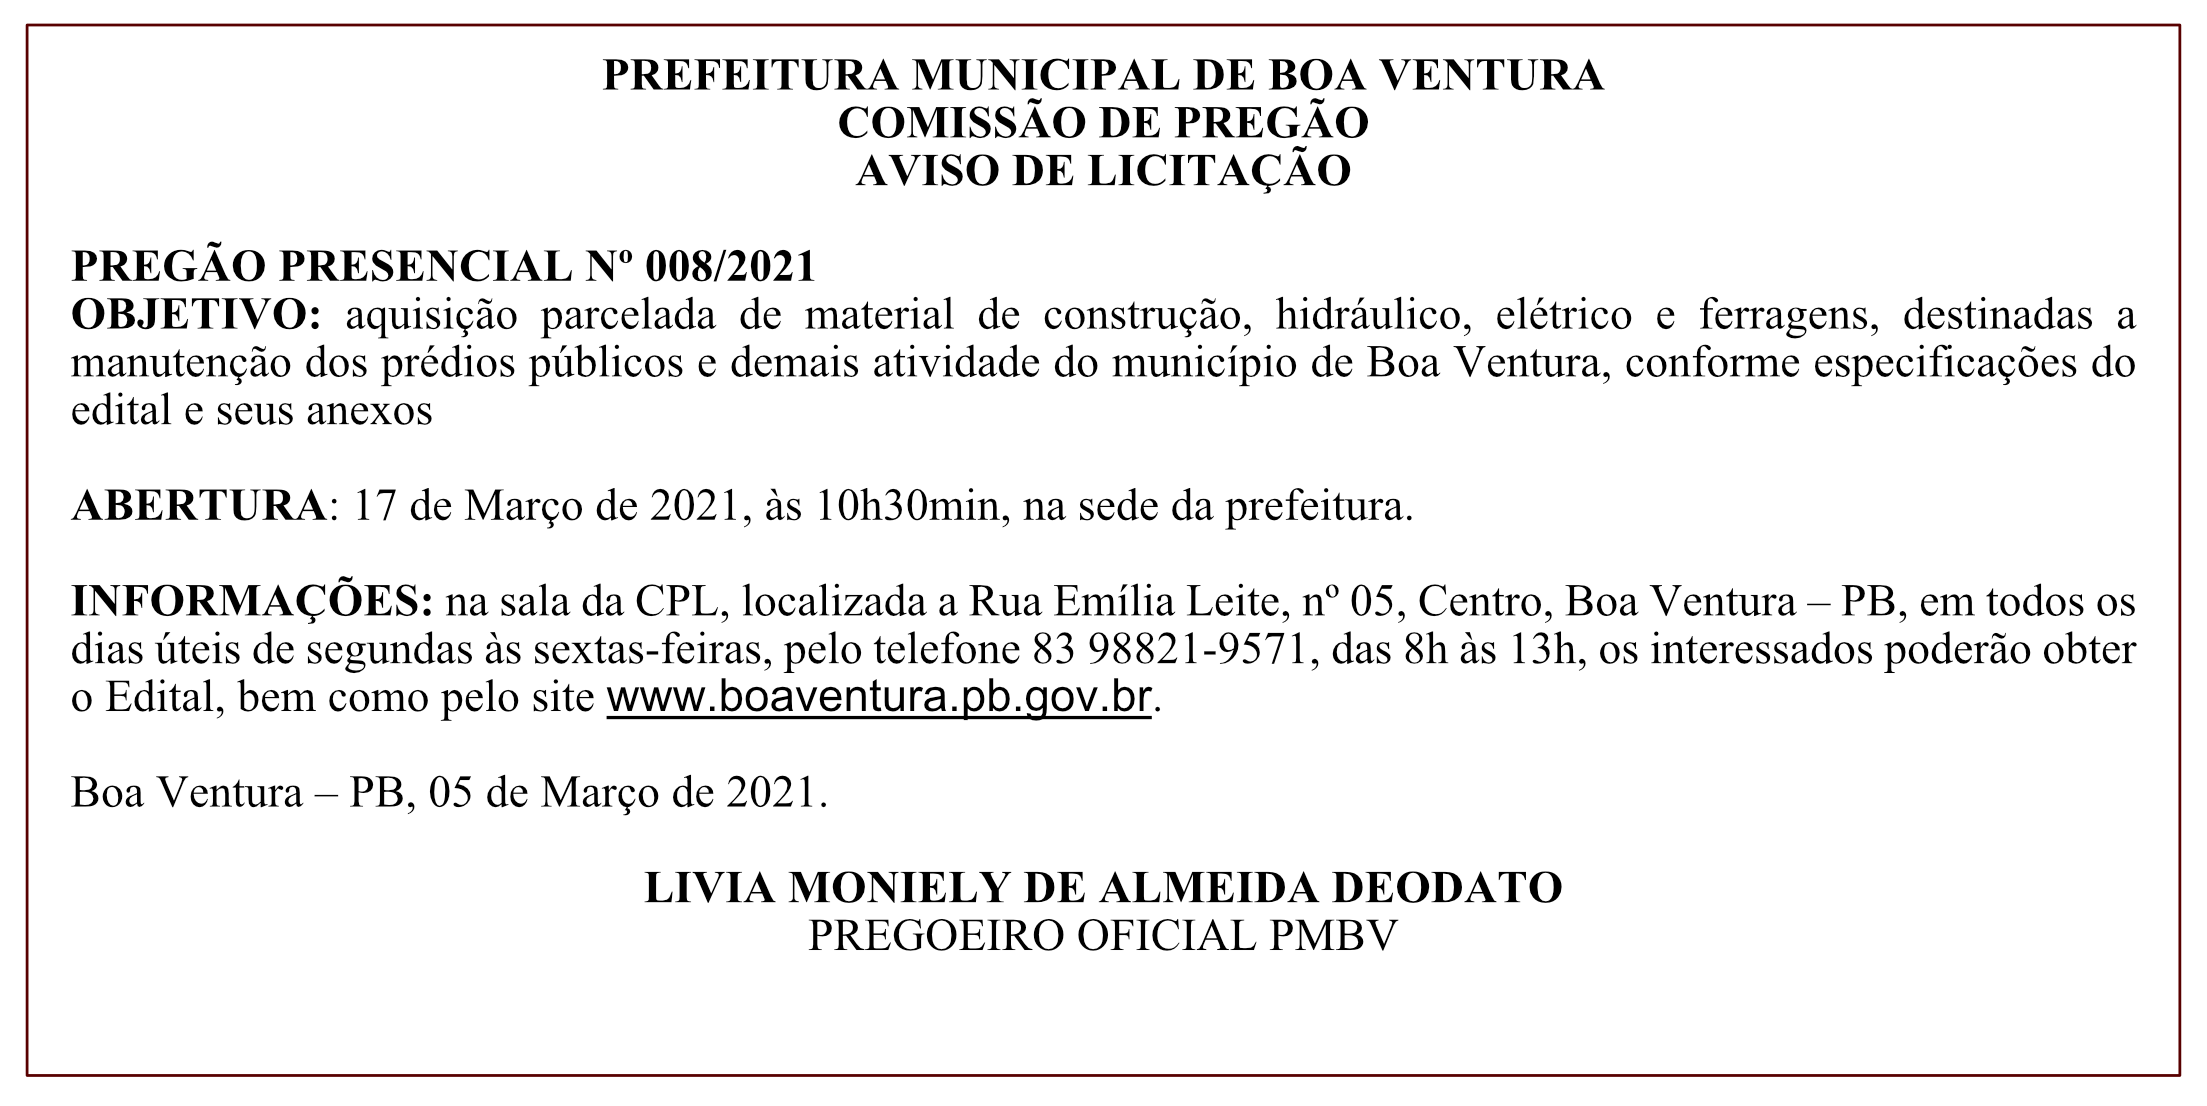 PREFEITURA MUNICIPAL DE BOA VENTURA – COMISSÃO DE PREGÃO – AVISO DE LICITAÇÃO – PREGÃO PRESENCIAL Nº 008/2021